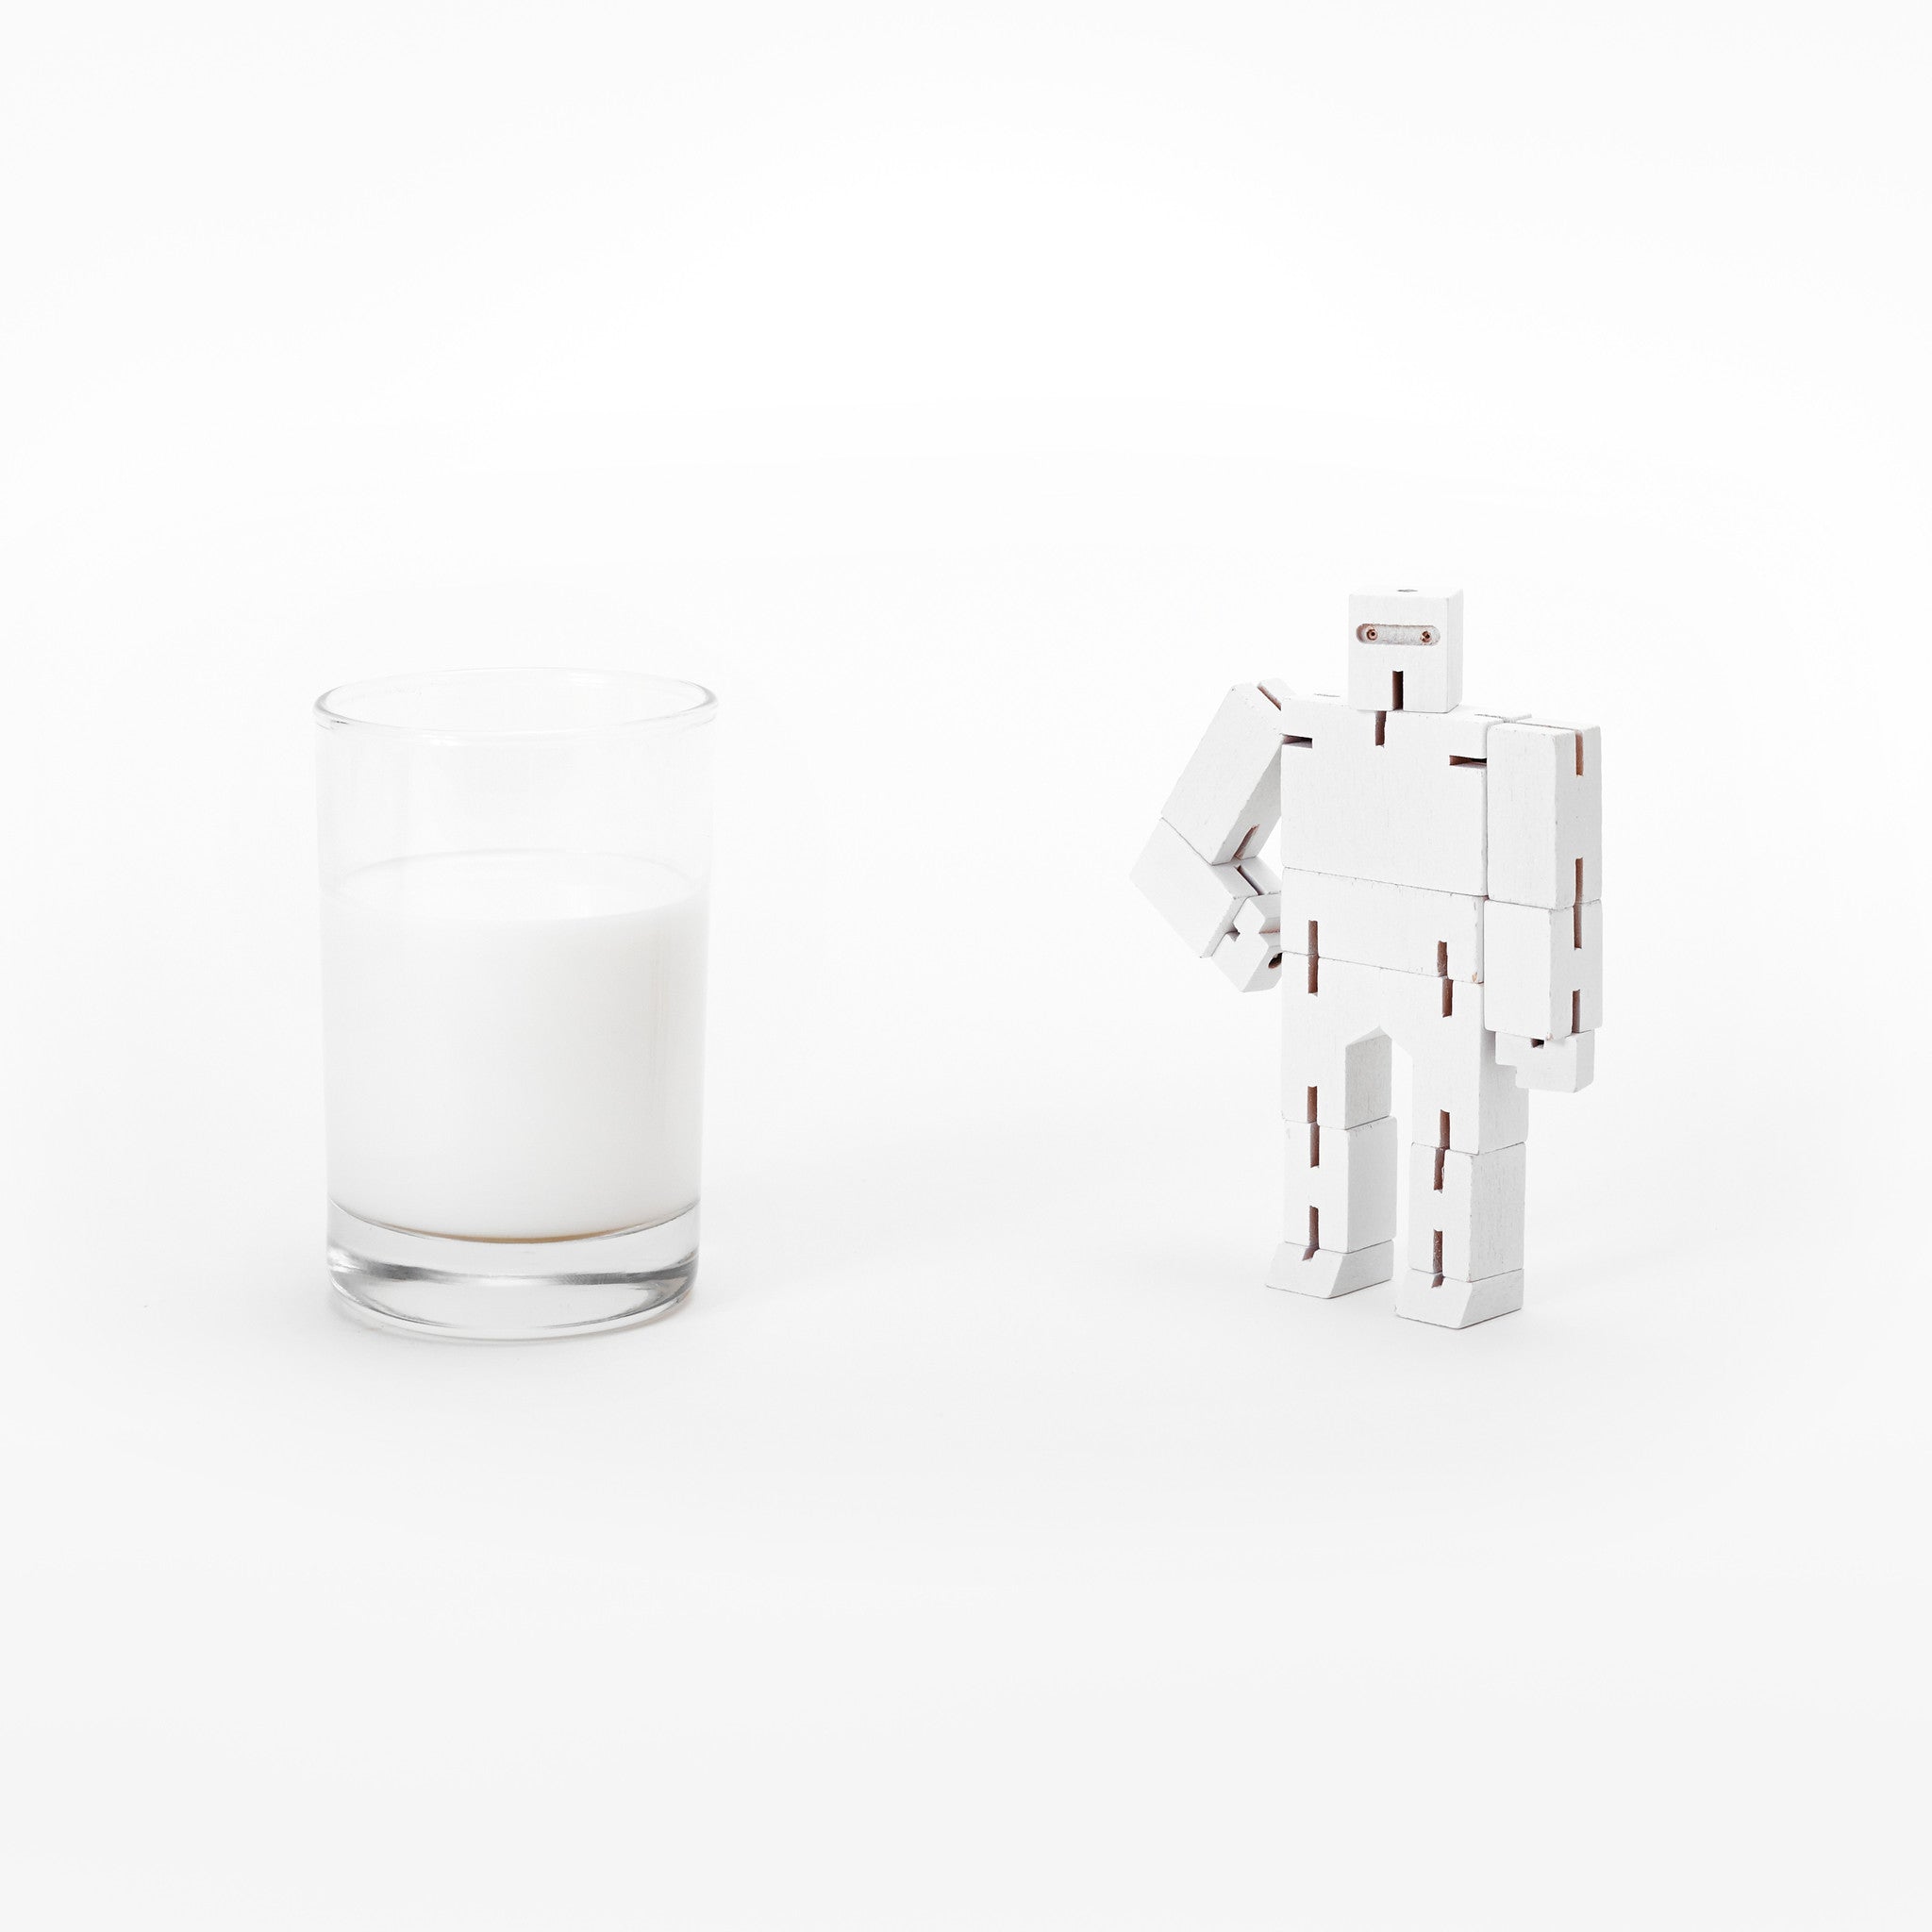 Cubebot - white